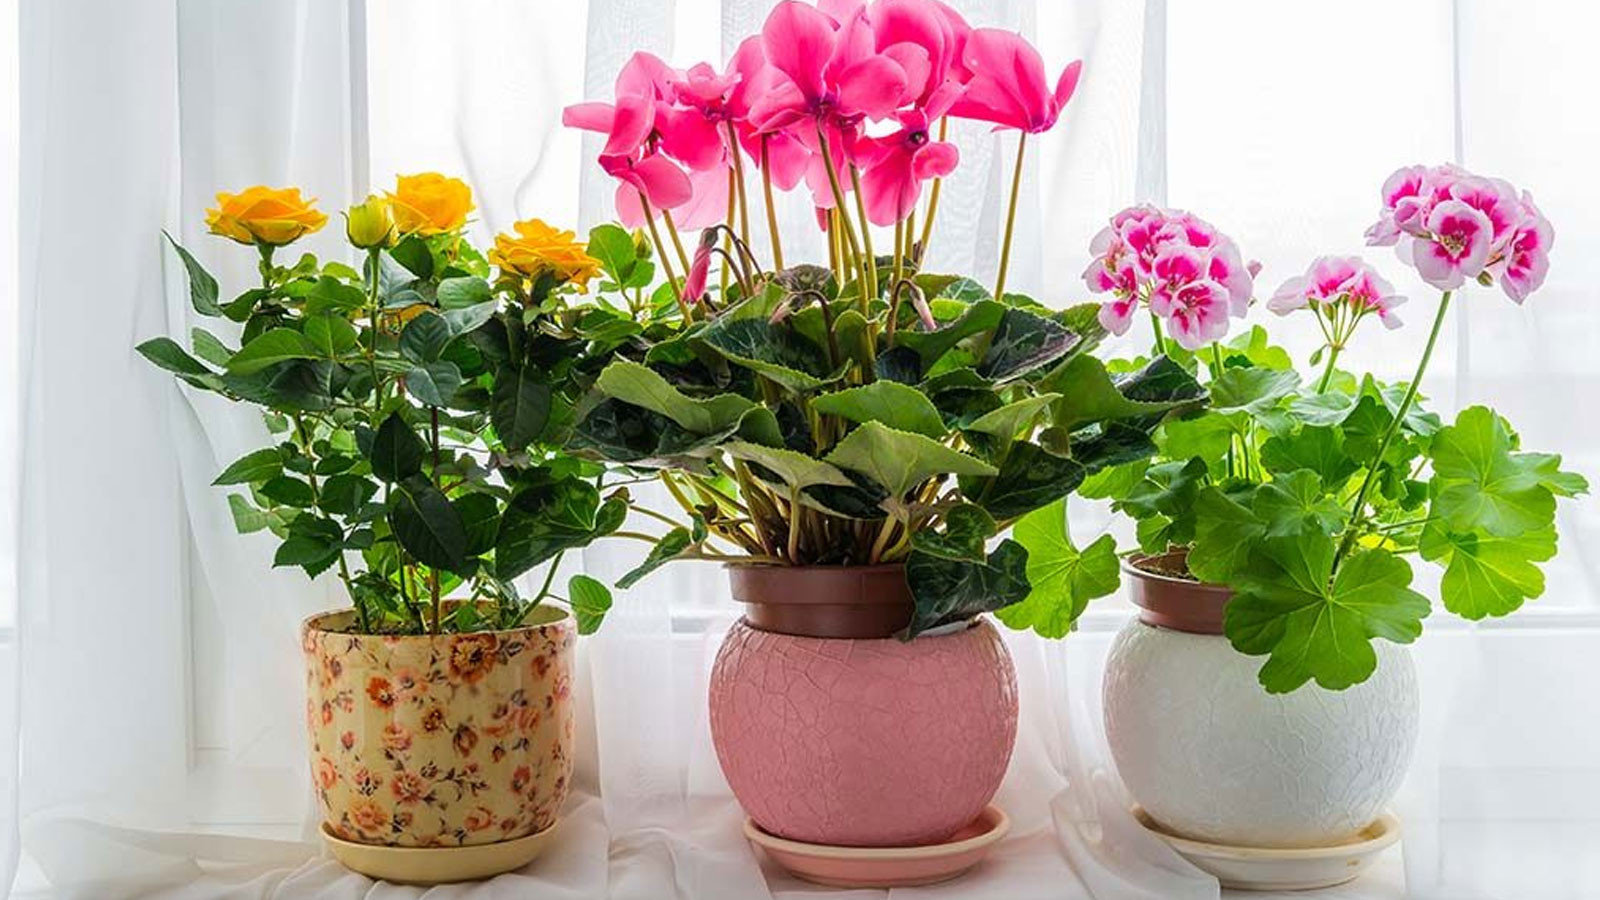 Çiçek ve bitkileri coşturan kür tarifleri: Evde doğal çiçek kürü nasıl hazırlanır?